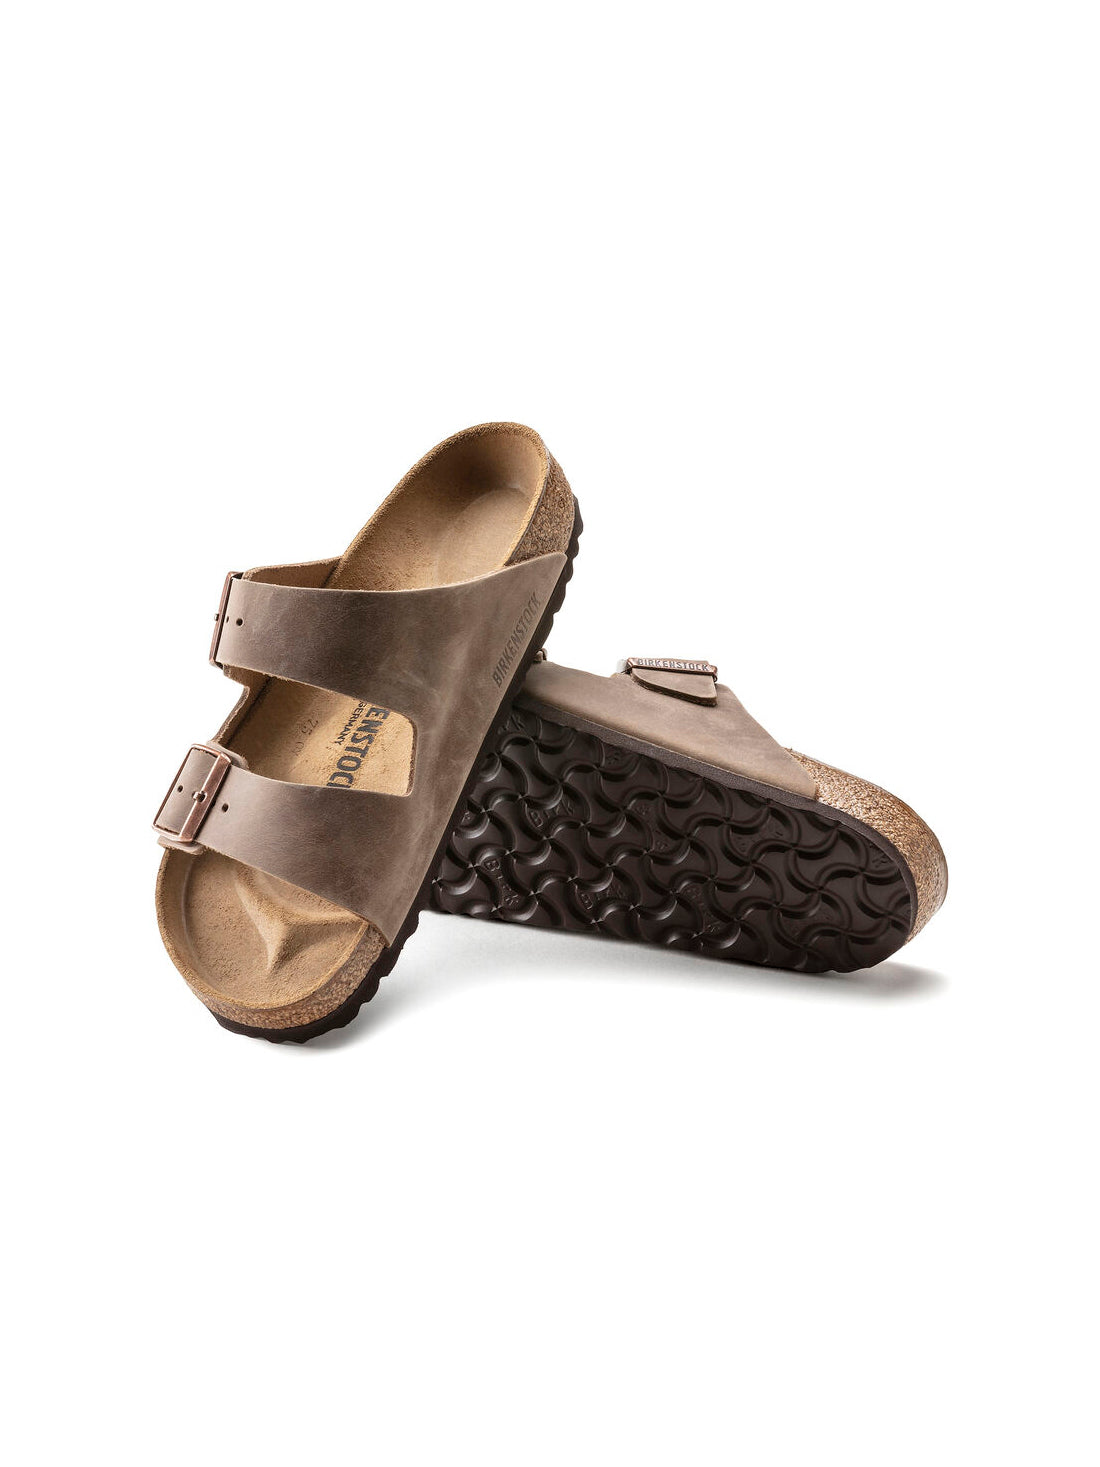 birkenstock arizona sandal in oiled leather tobacco narrow